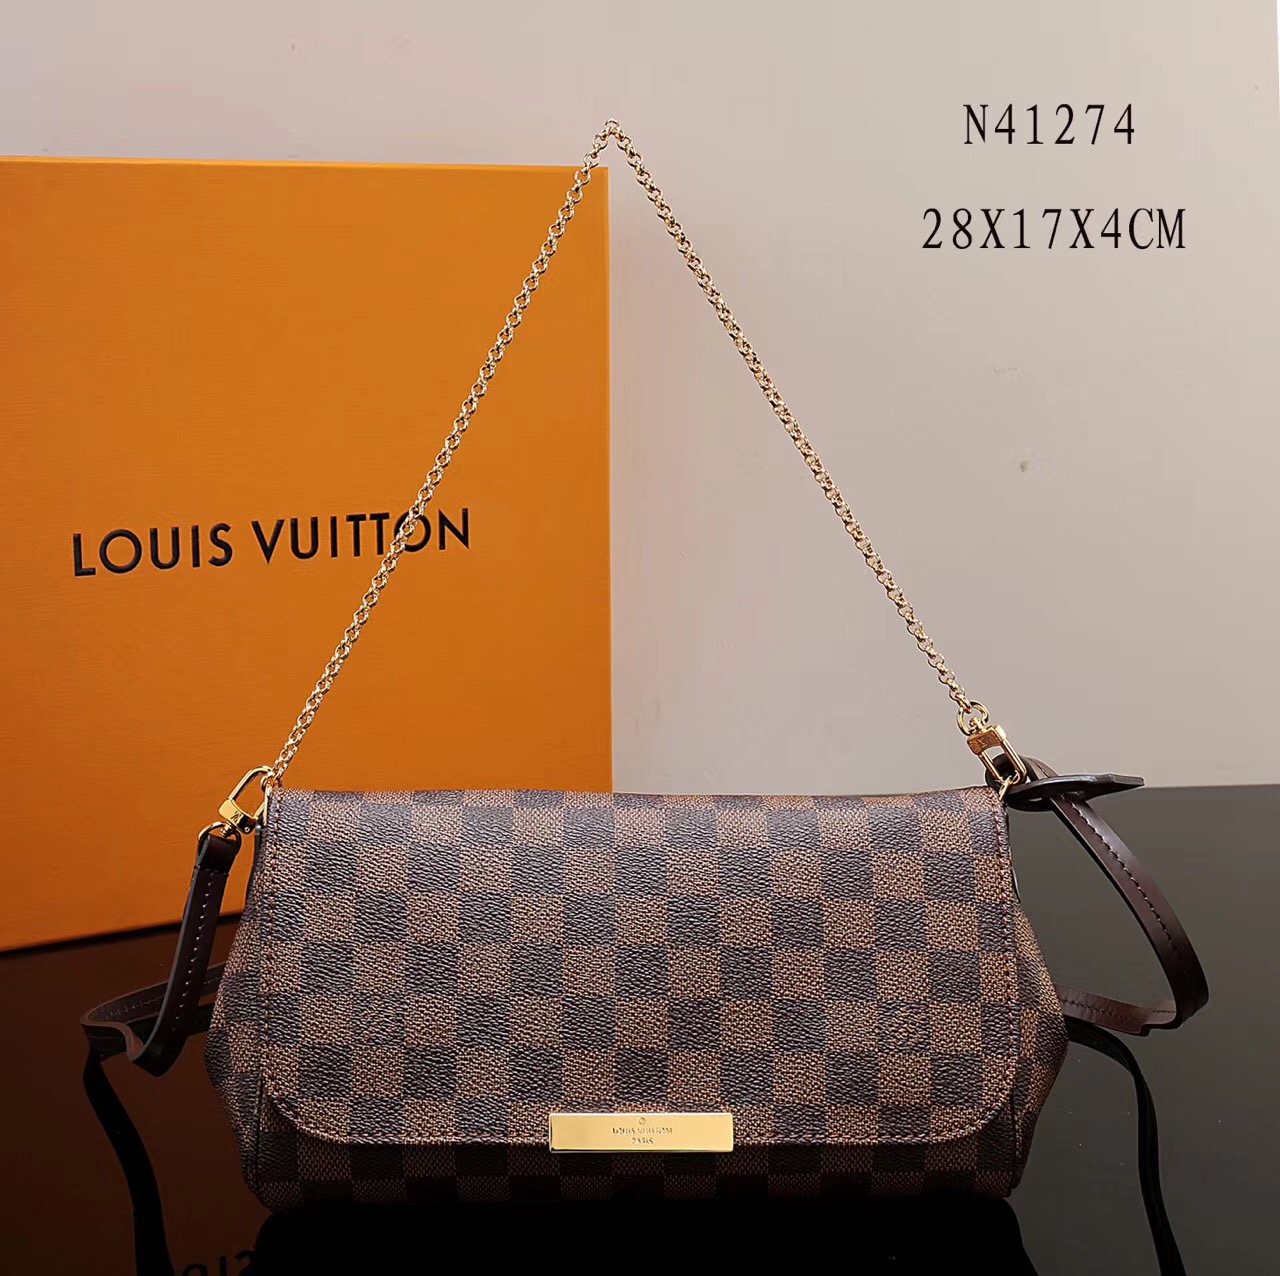 LV Louis Vuitton Favorite Damier N41274 Canvas Handbags Shoulder bags